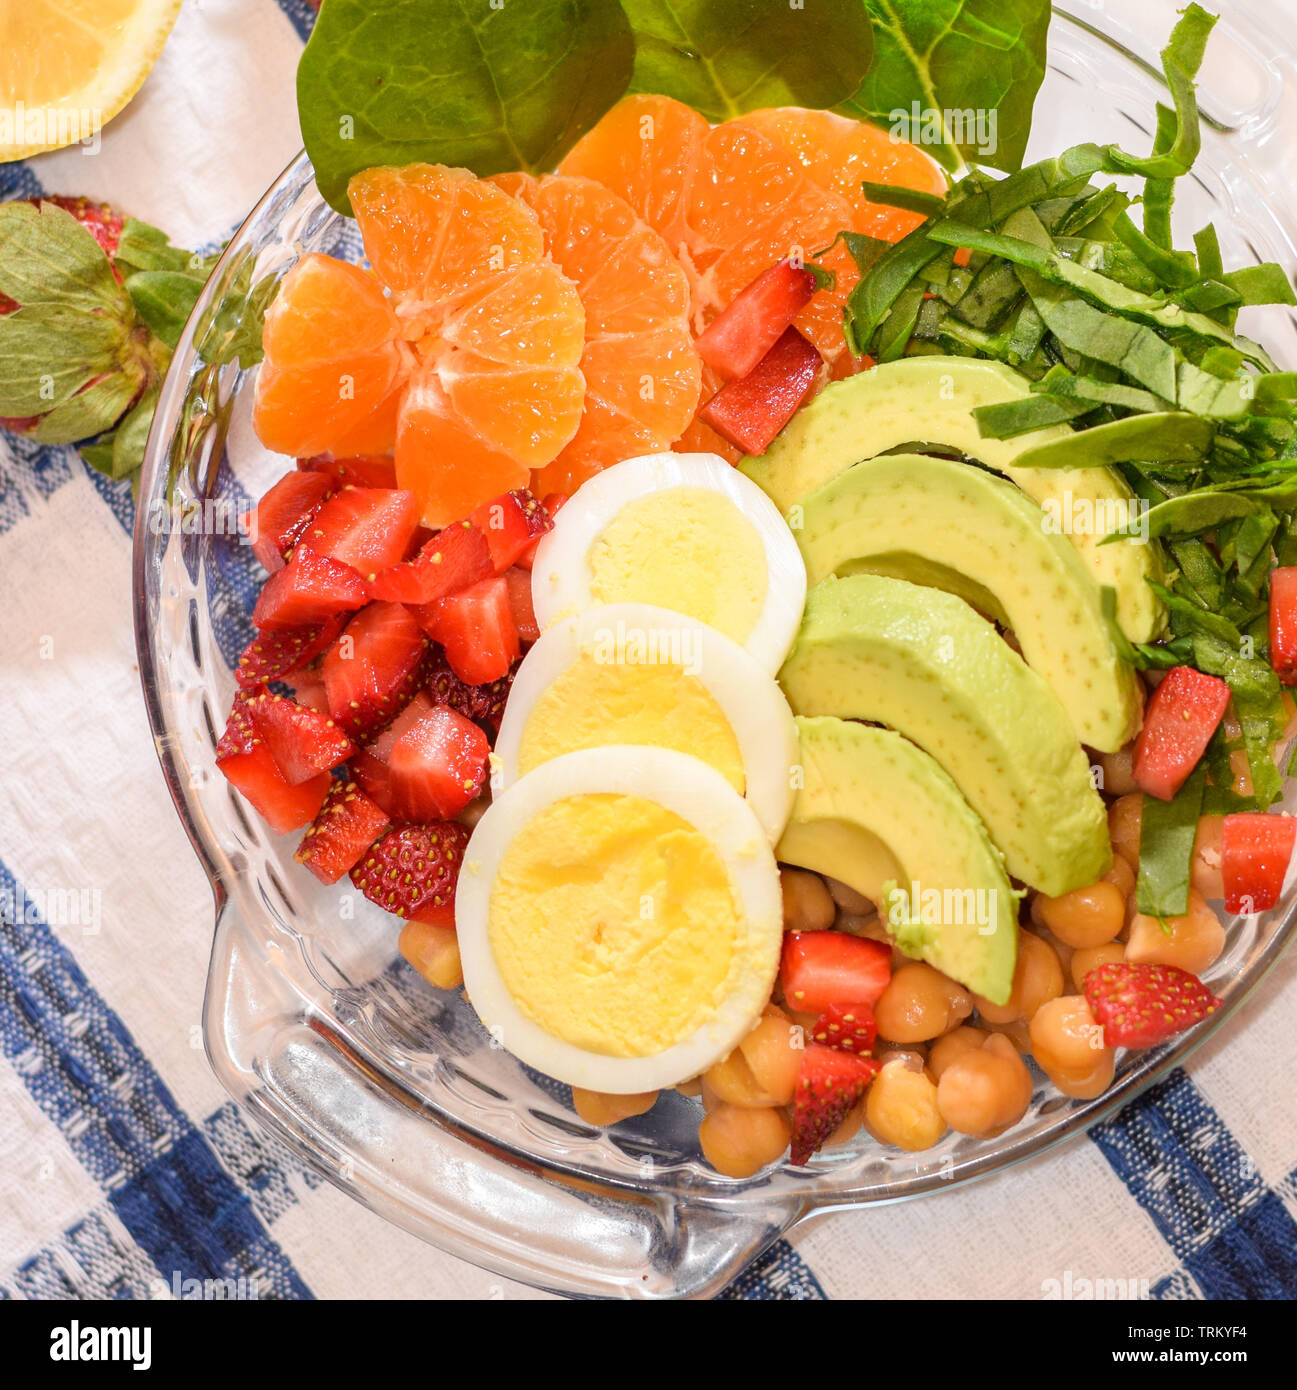 Ensalada de frutas y verduras frescas con huevos y aguacates en un tazón de vidrio, desayuno saludable, vista superior Foto de stock